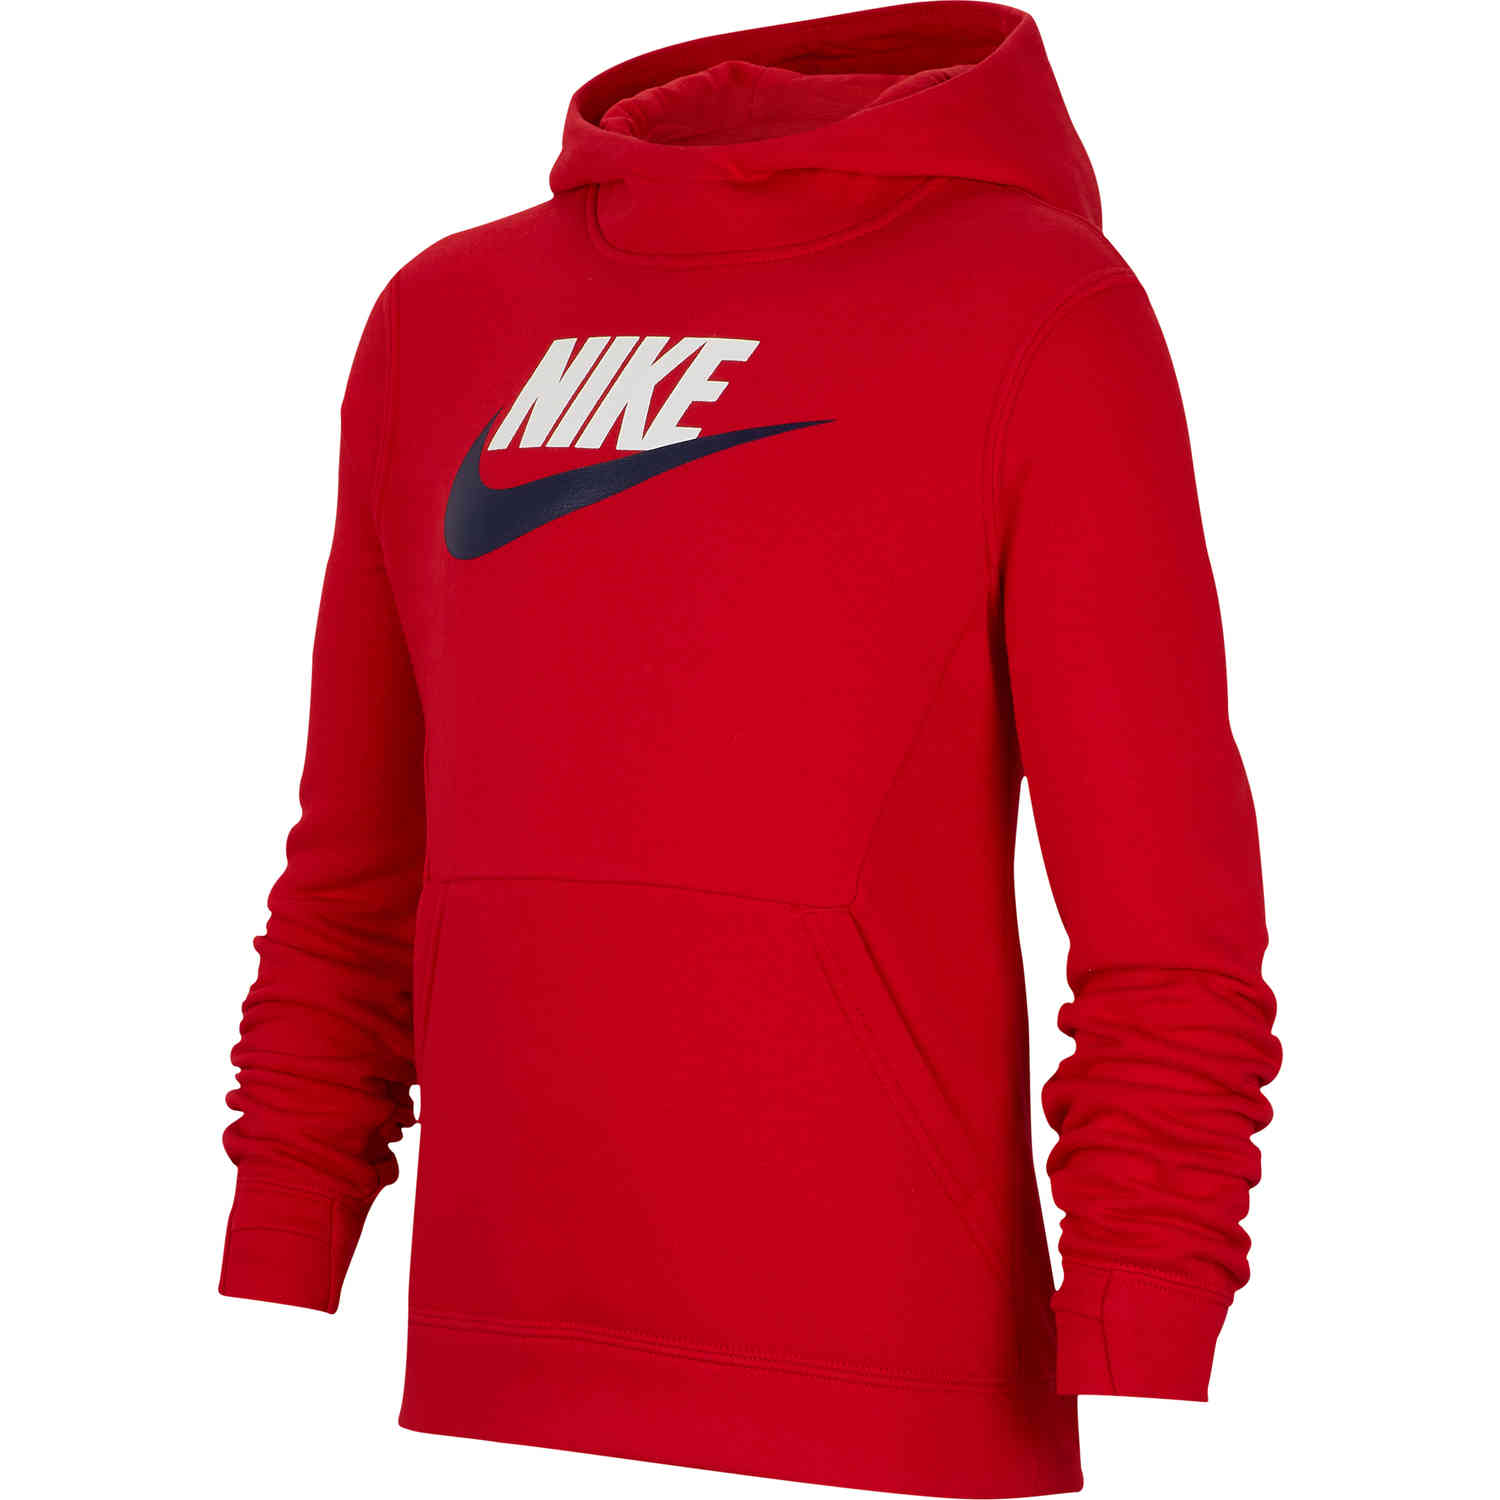 Kids Nike Sportswear Pullover Fleece 